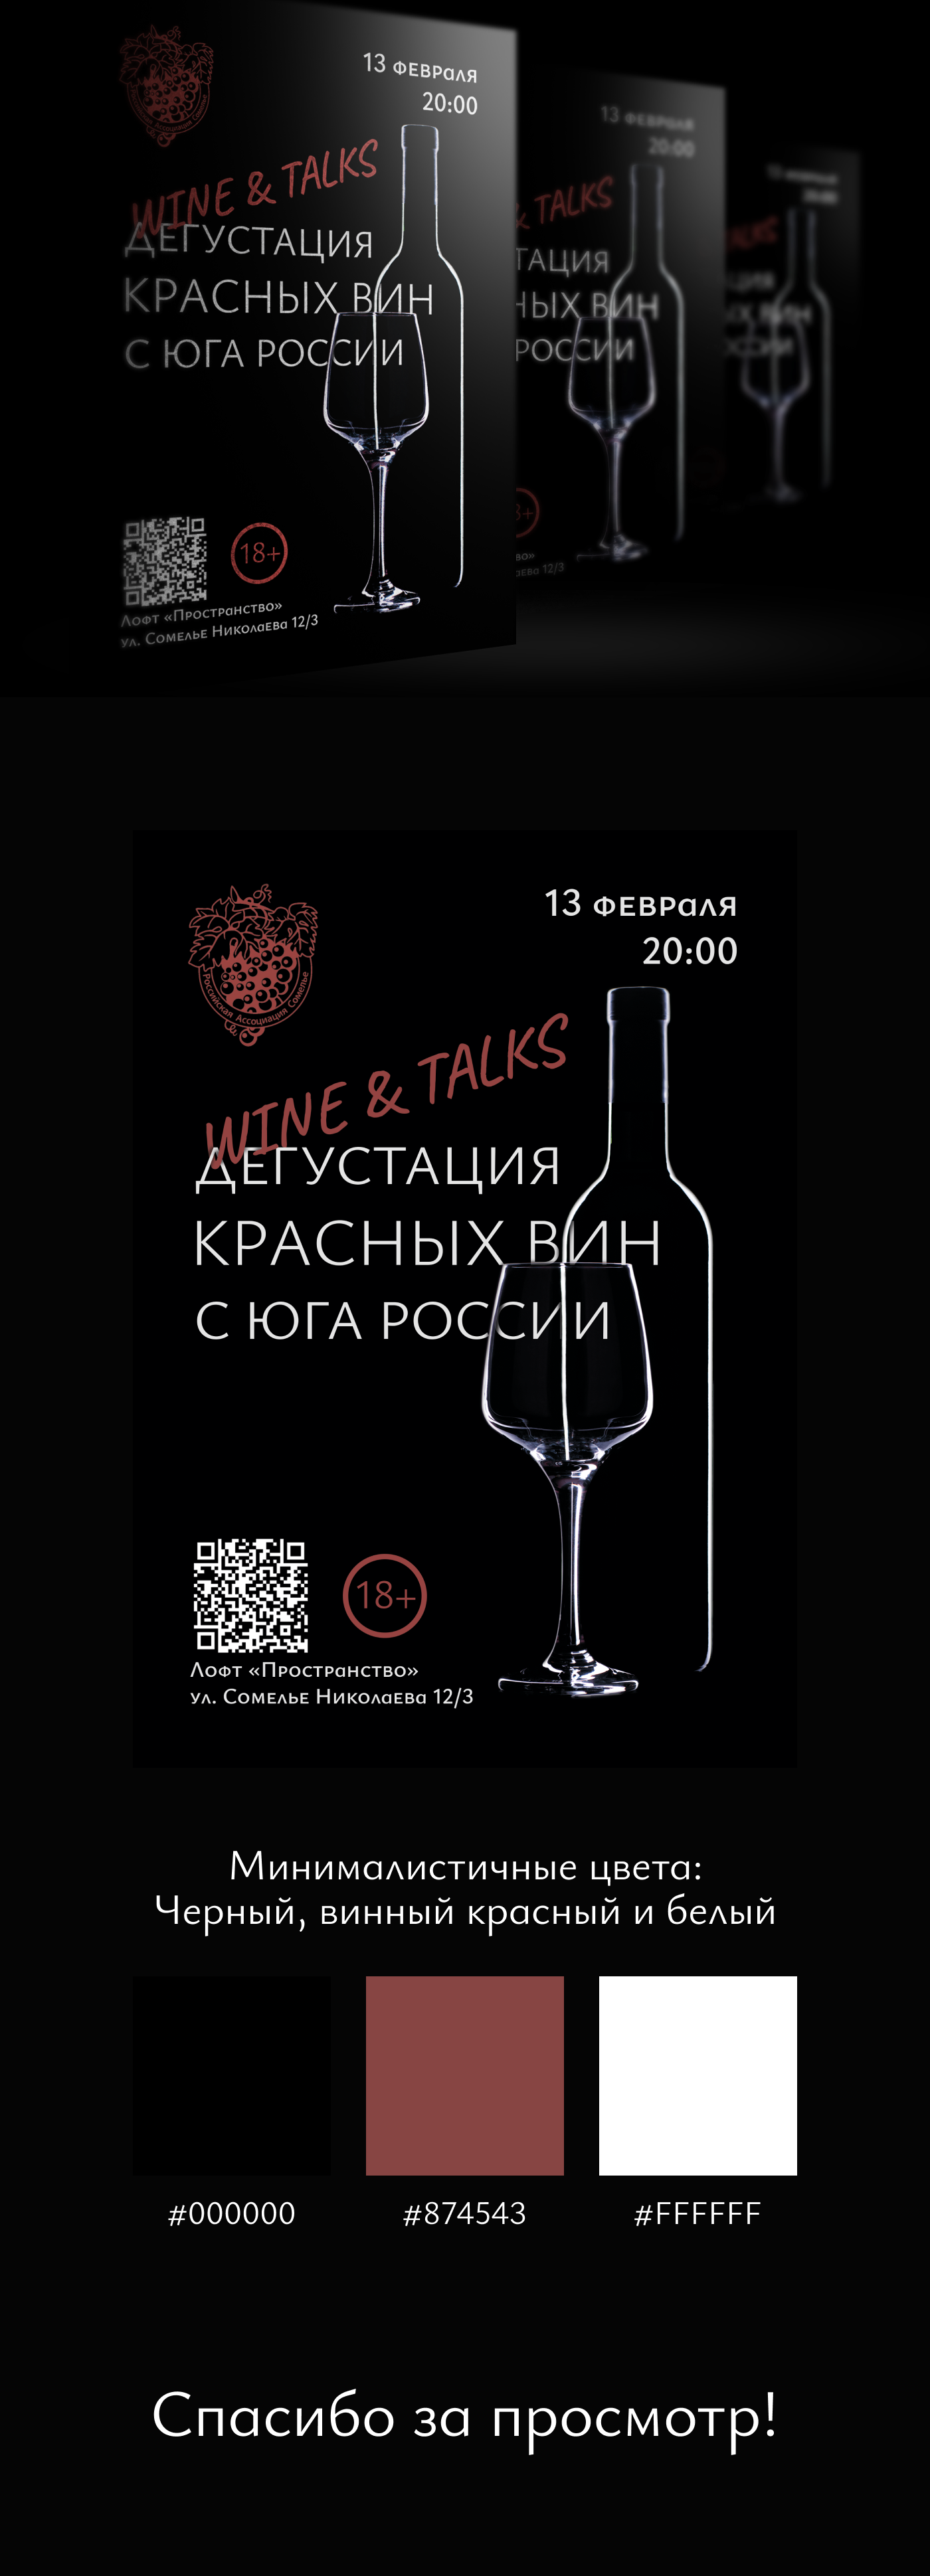 poster banner Advertising  wine Red wine tasting tasty talk Event festival